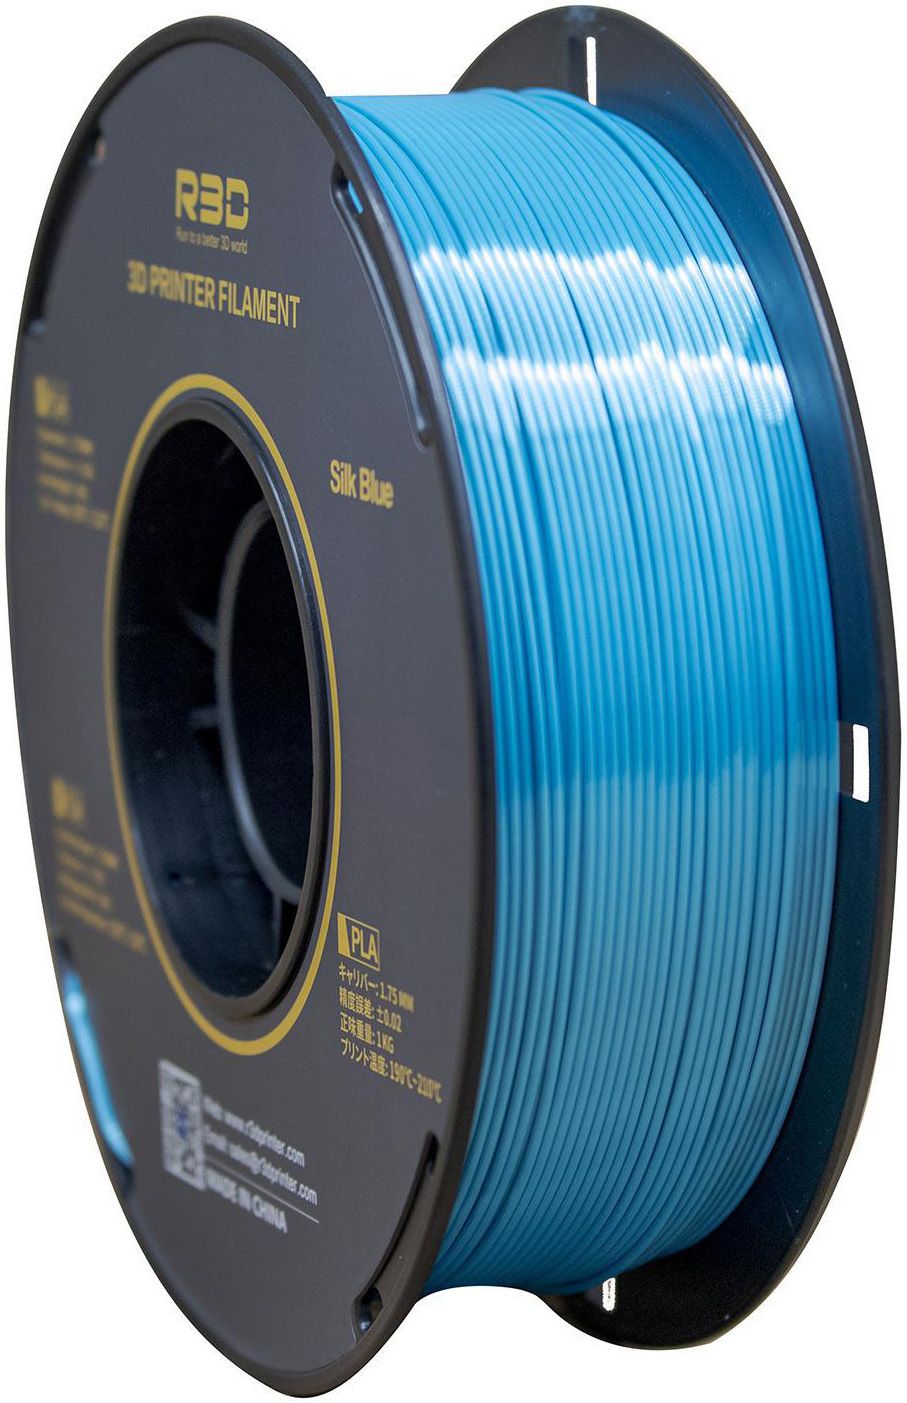 PLA Silk пластик R3D 1,75 мм синий 1 кг